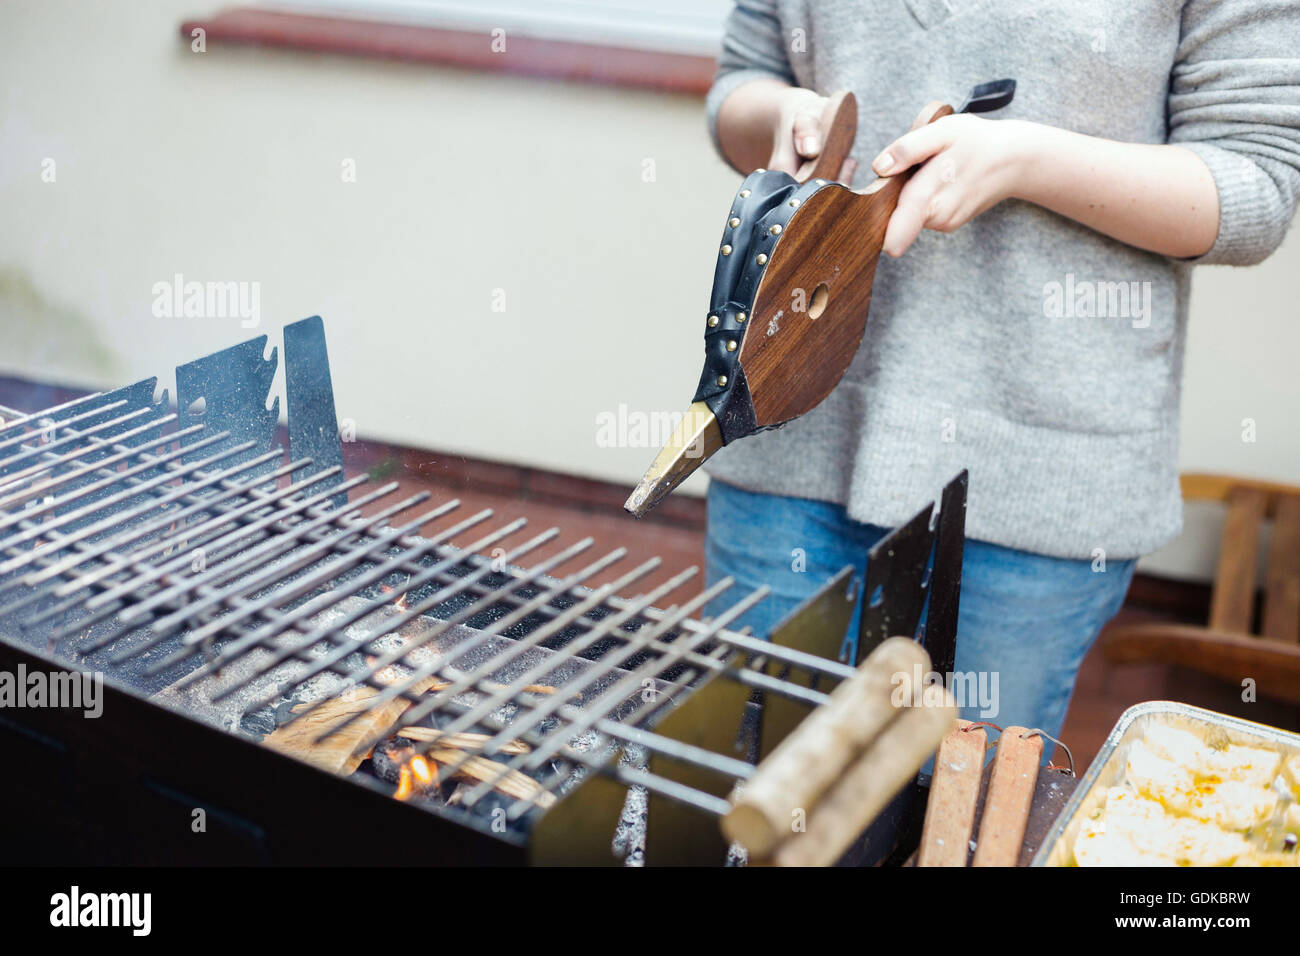 Eine Sommer-Grillparty vorbereiten Holzkohlegrill. Lifestyle-Bild, natürliches Licht, flache Schärfentiefe. Stockfoto